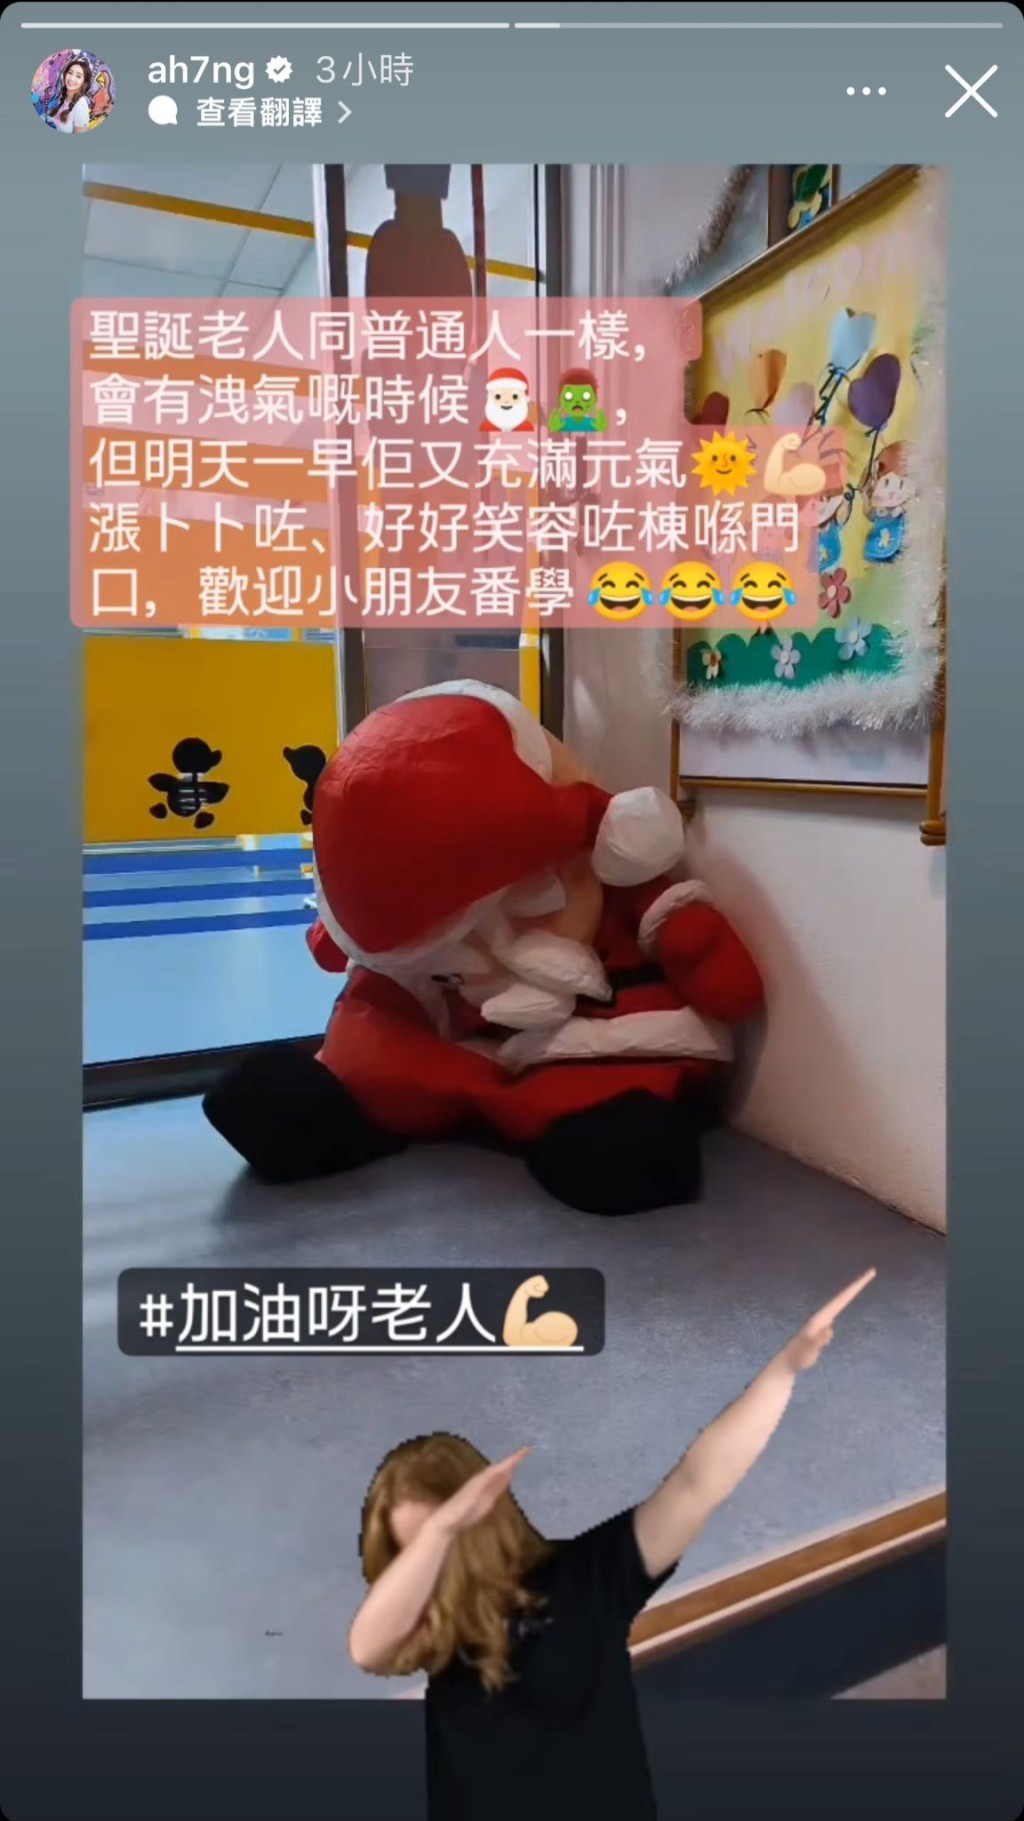 未料，日前吳嘉儀再貼出一張「謝皮」聖誕老人吹氣公仔照。